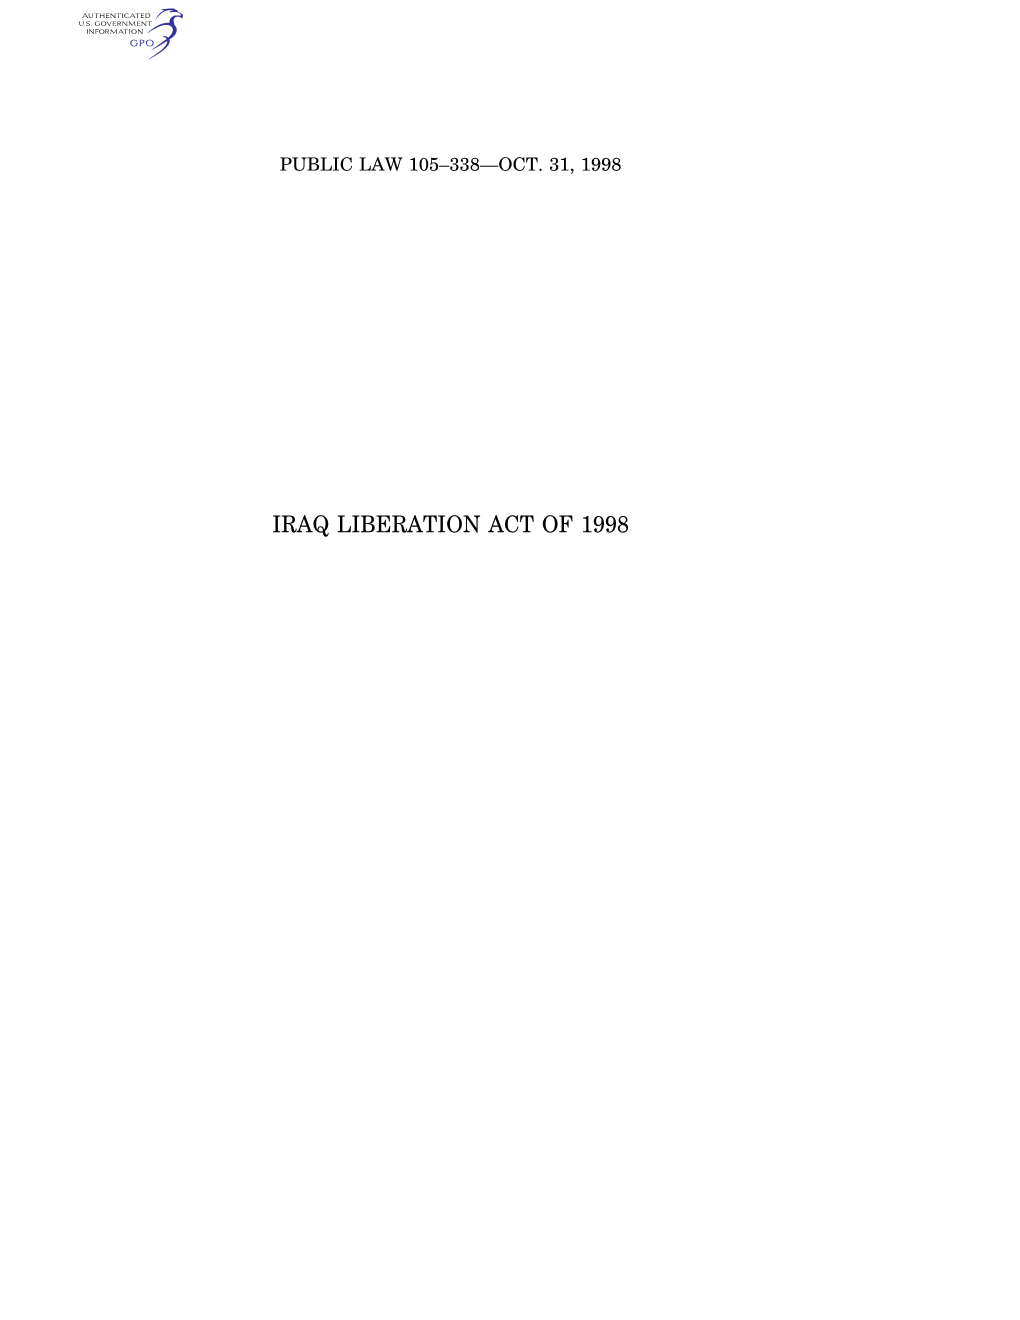 Iraq Liberation Act of 1998 112 Stat